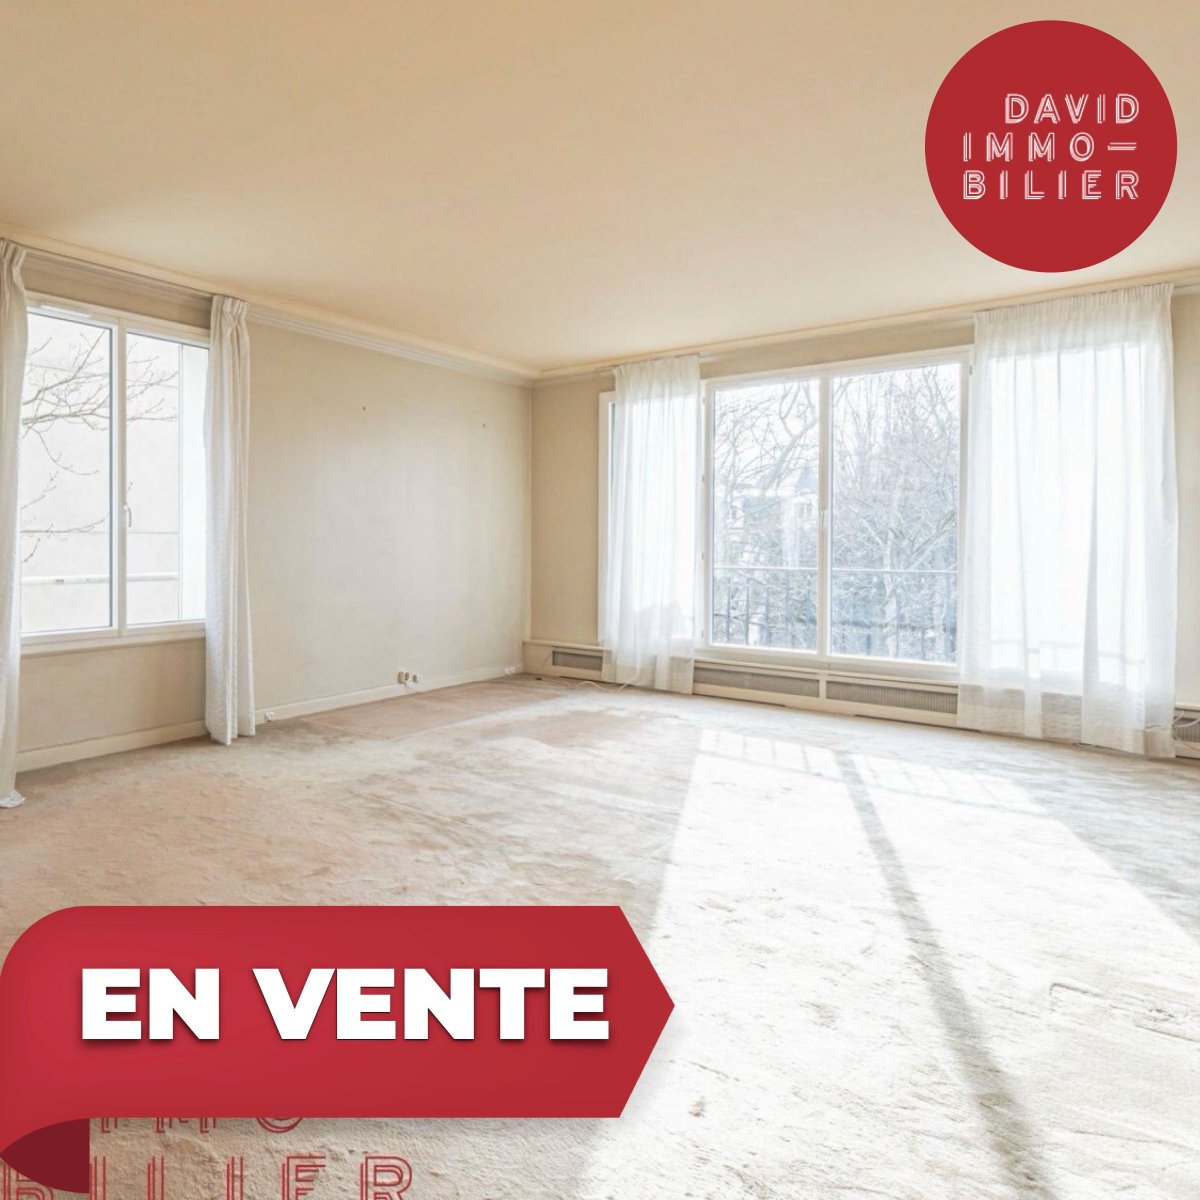 Neuilly-sur-seine Hôpital américain. Appartement 4 pièces de 118 m². Vue agréable et sur verdure. #Avendre #DavidImmo #Paris #Immobilier